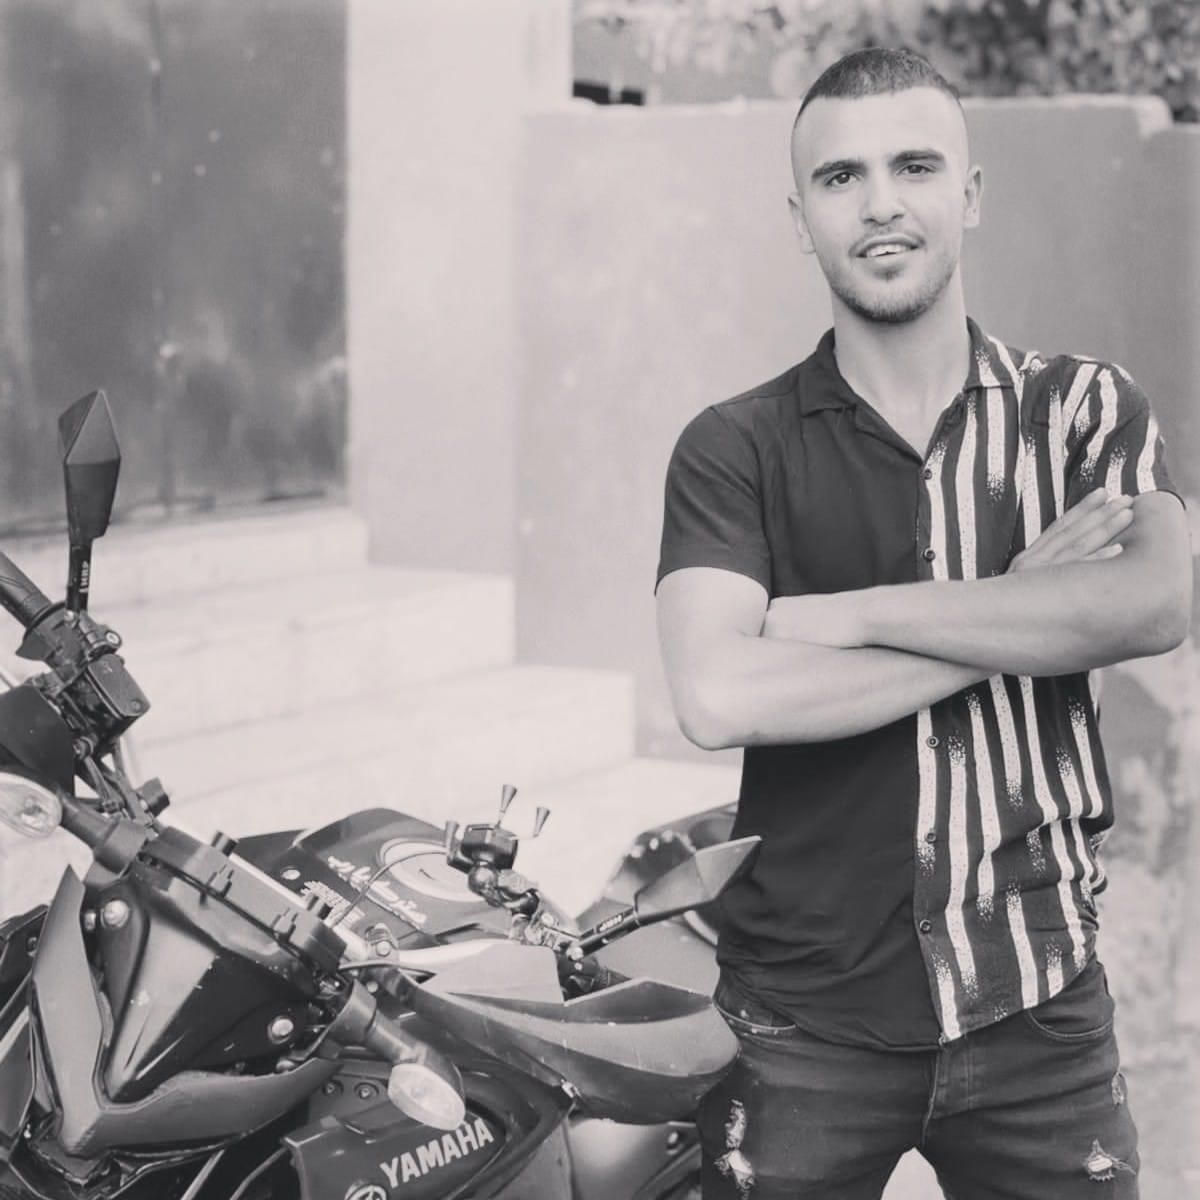 استشهاد شاب في جنين وسيدة في القدس برصاص الاحتلال الإسرائيلي 